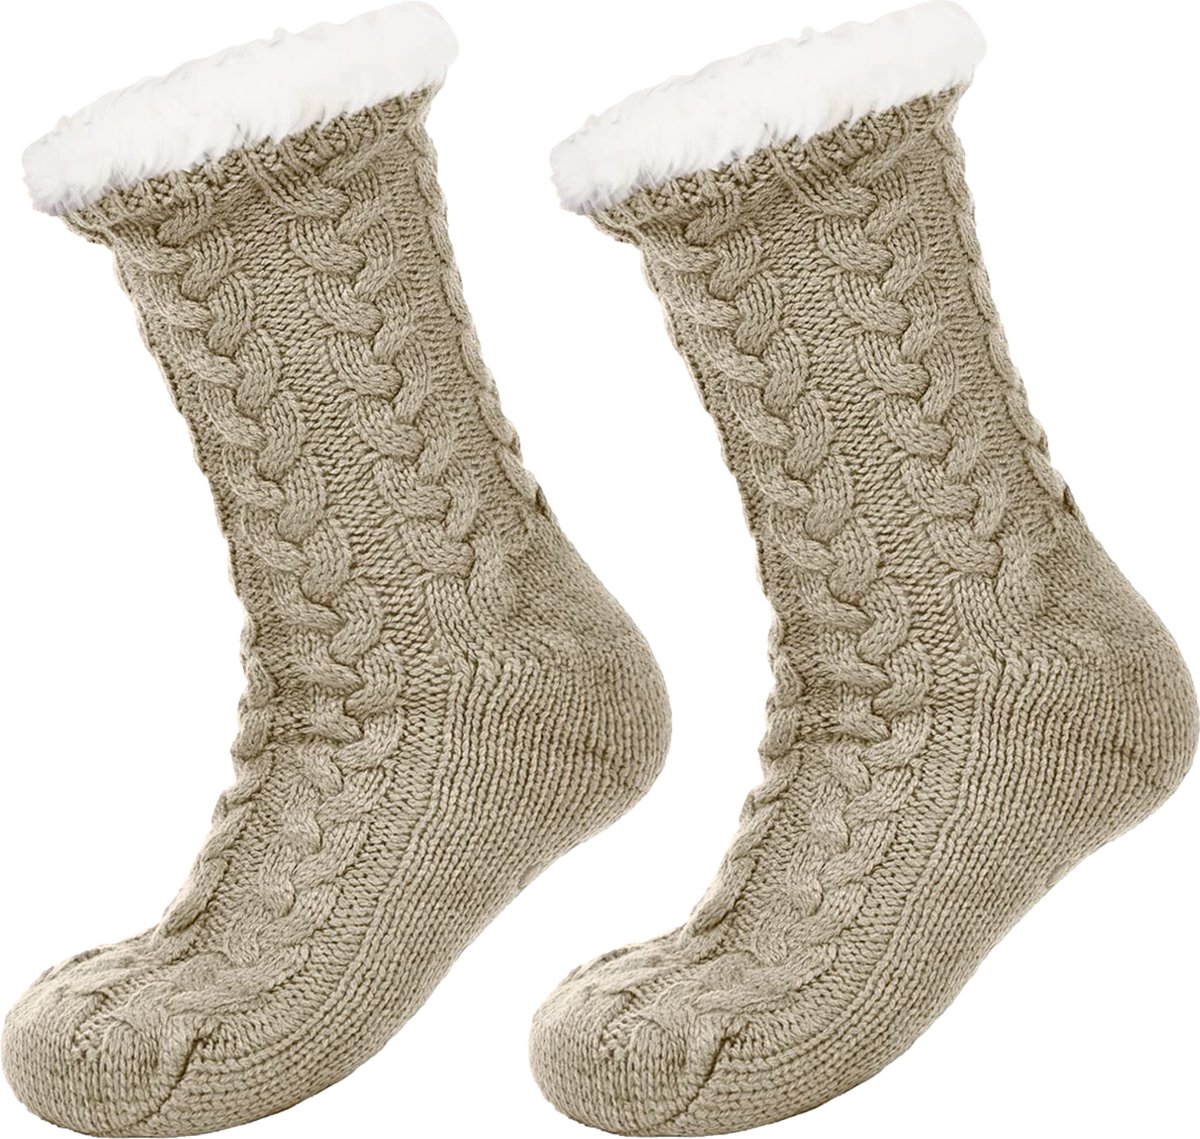 JAXY Huissokken - Huissokken Dames en Heren - Verwarmde sokken - Anti Slip Sokken - Fleece Sokken - Dikke Sokken - Fluffy Sokken - Slofsokken - Warme Sokken - Bedsokken - Gevoerde Sokken - Winter Sokken - Khaki - JAXY